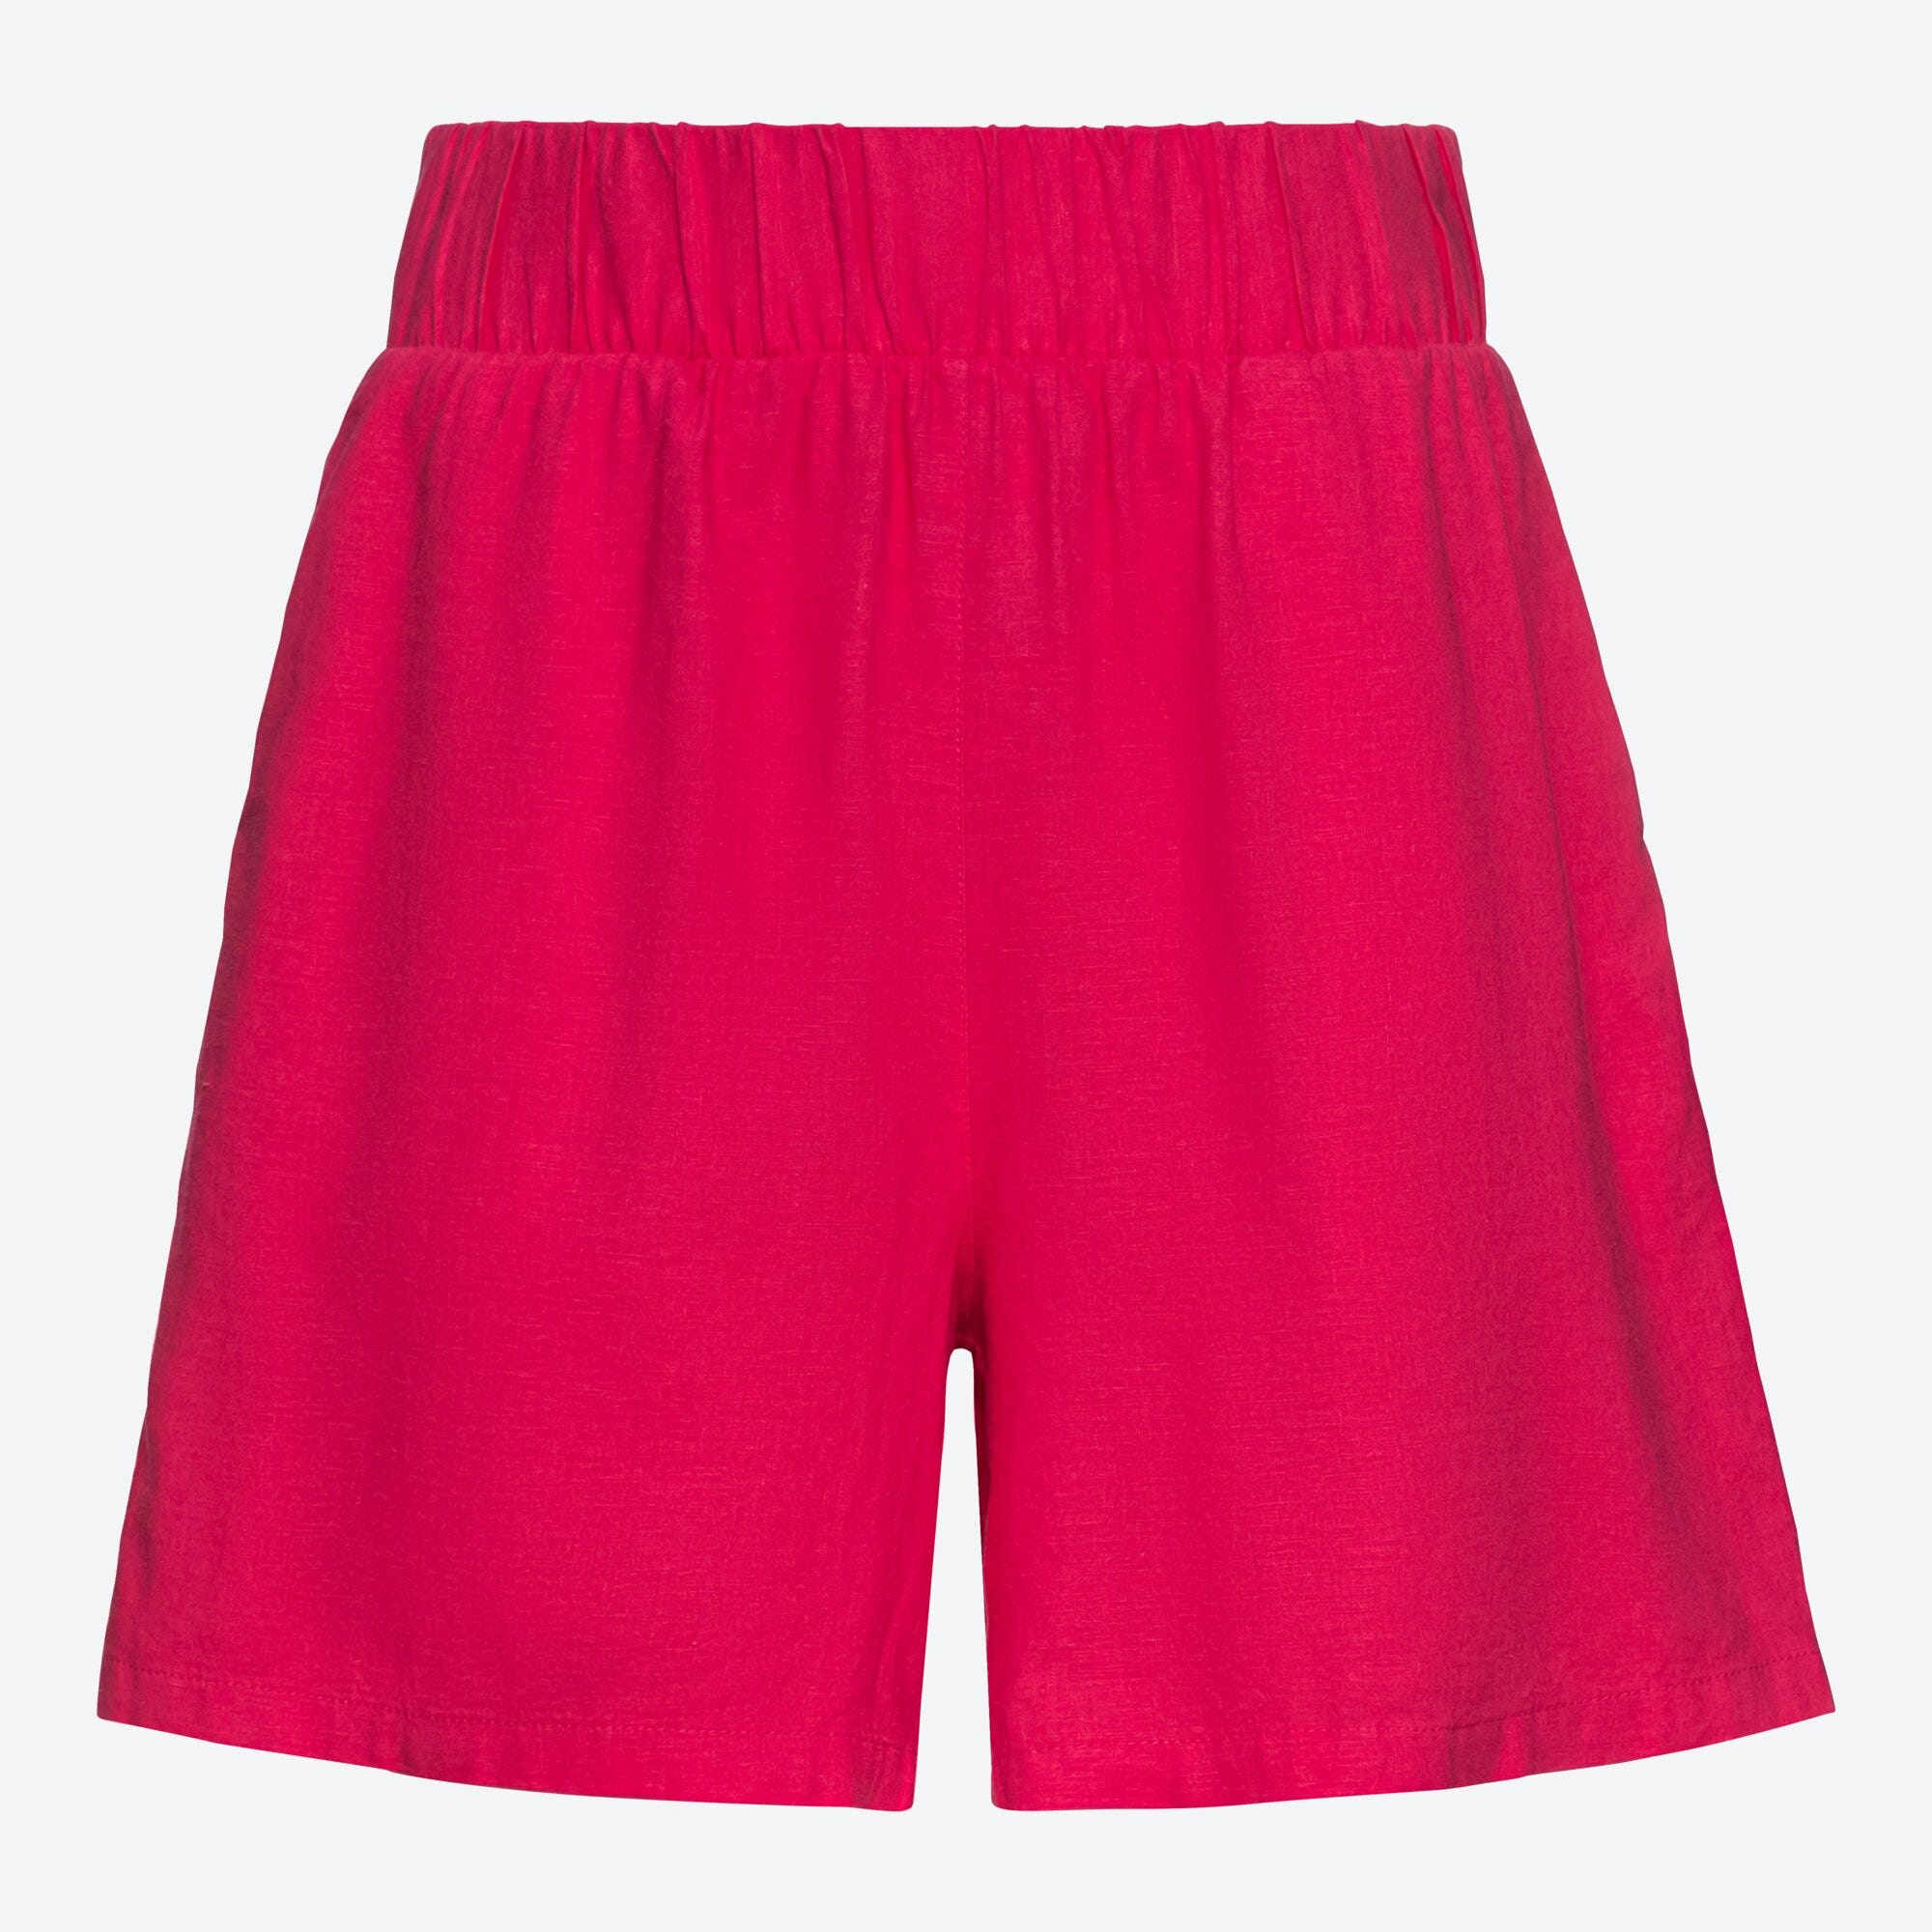 Damen-Shorts in sommerlichem Design